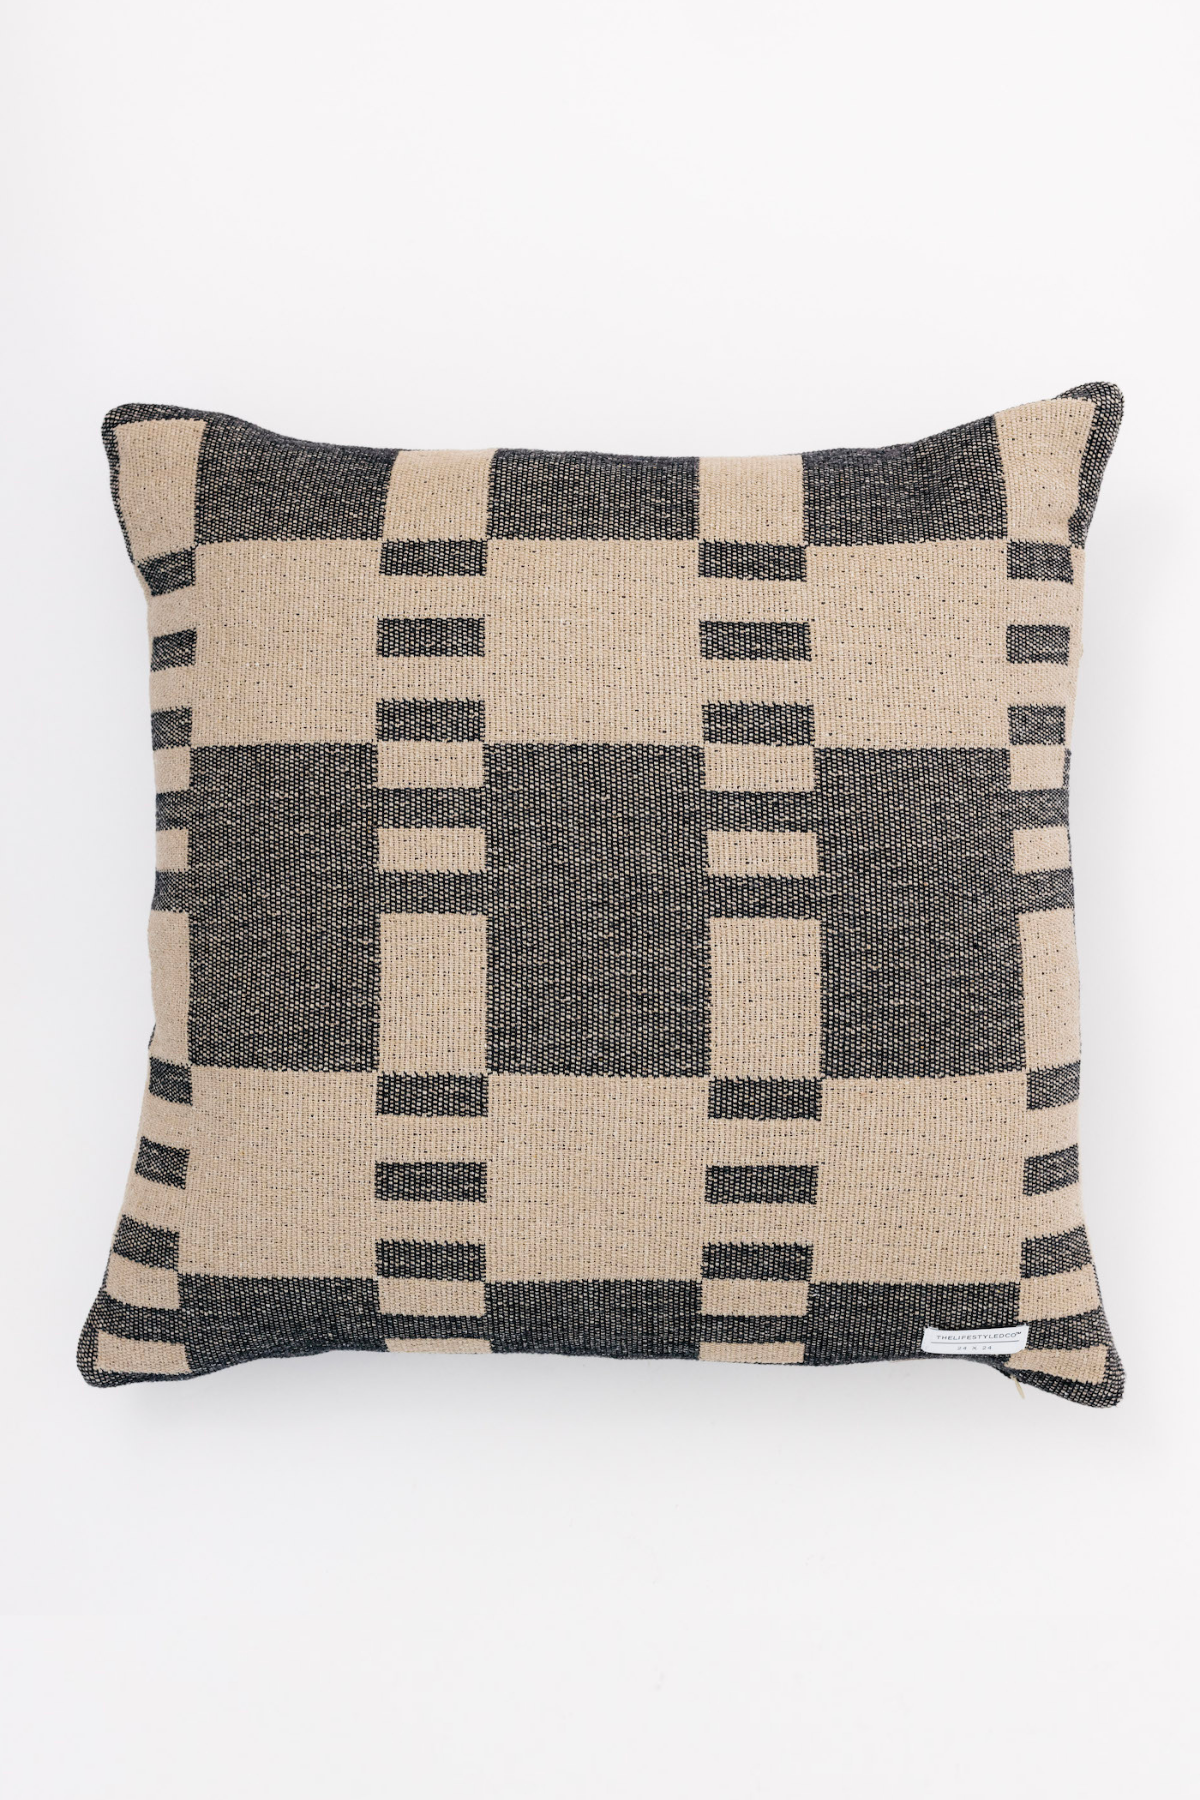 Proper Stripe Pillow - Black + Tan - 2 Sizes